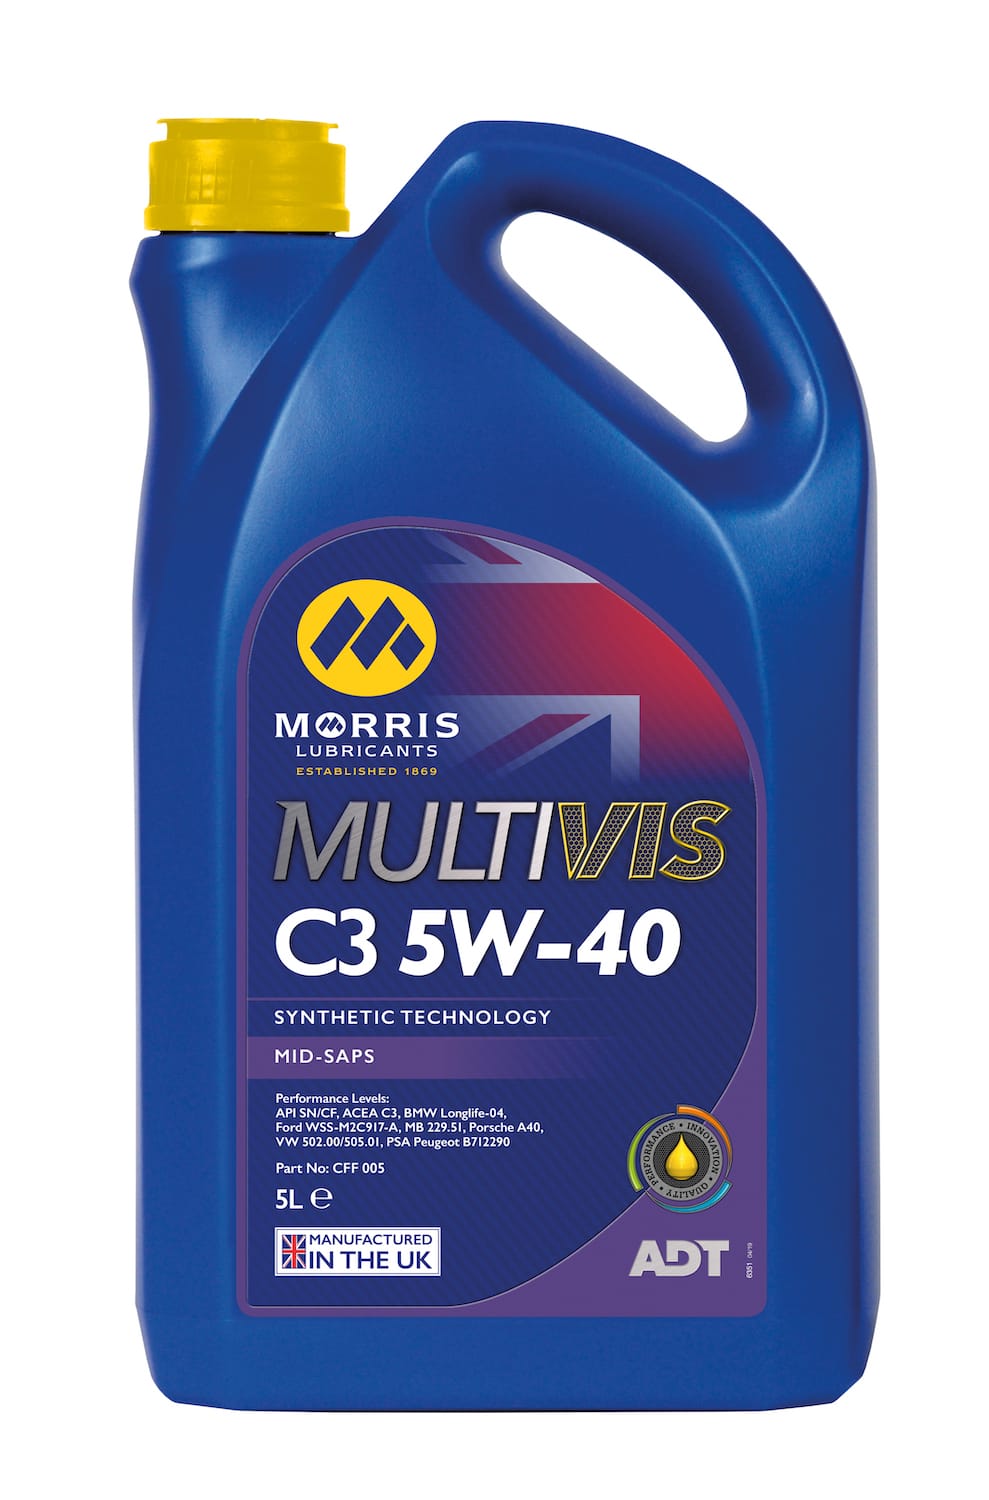 Morris Multivis ADT C3 5W-40